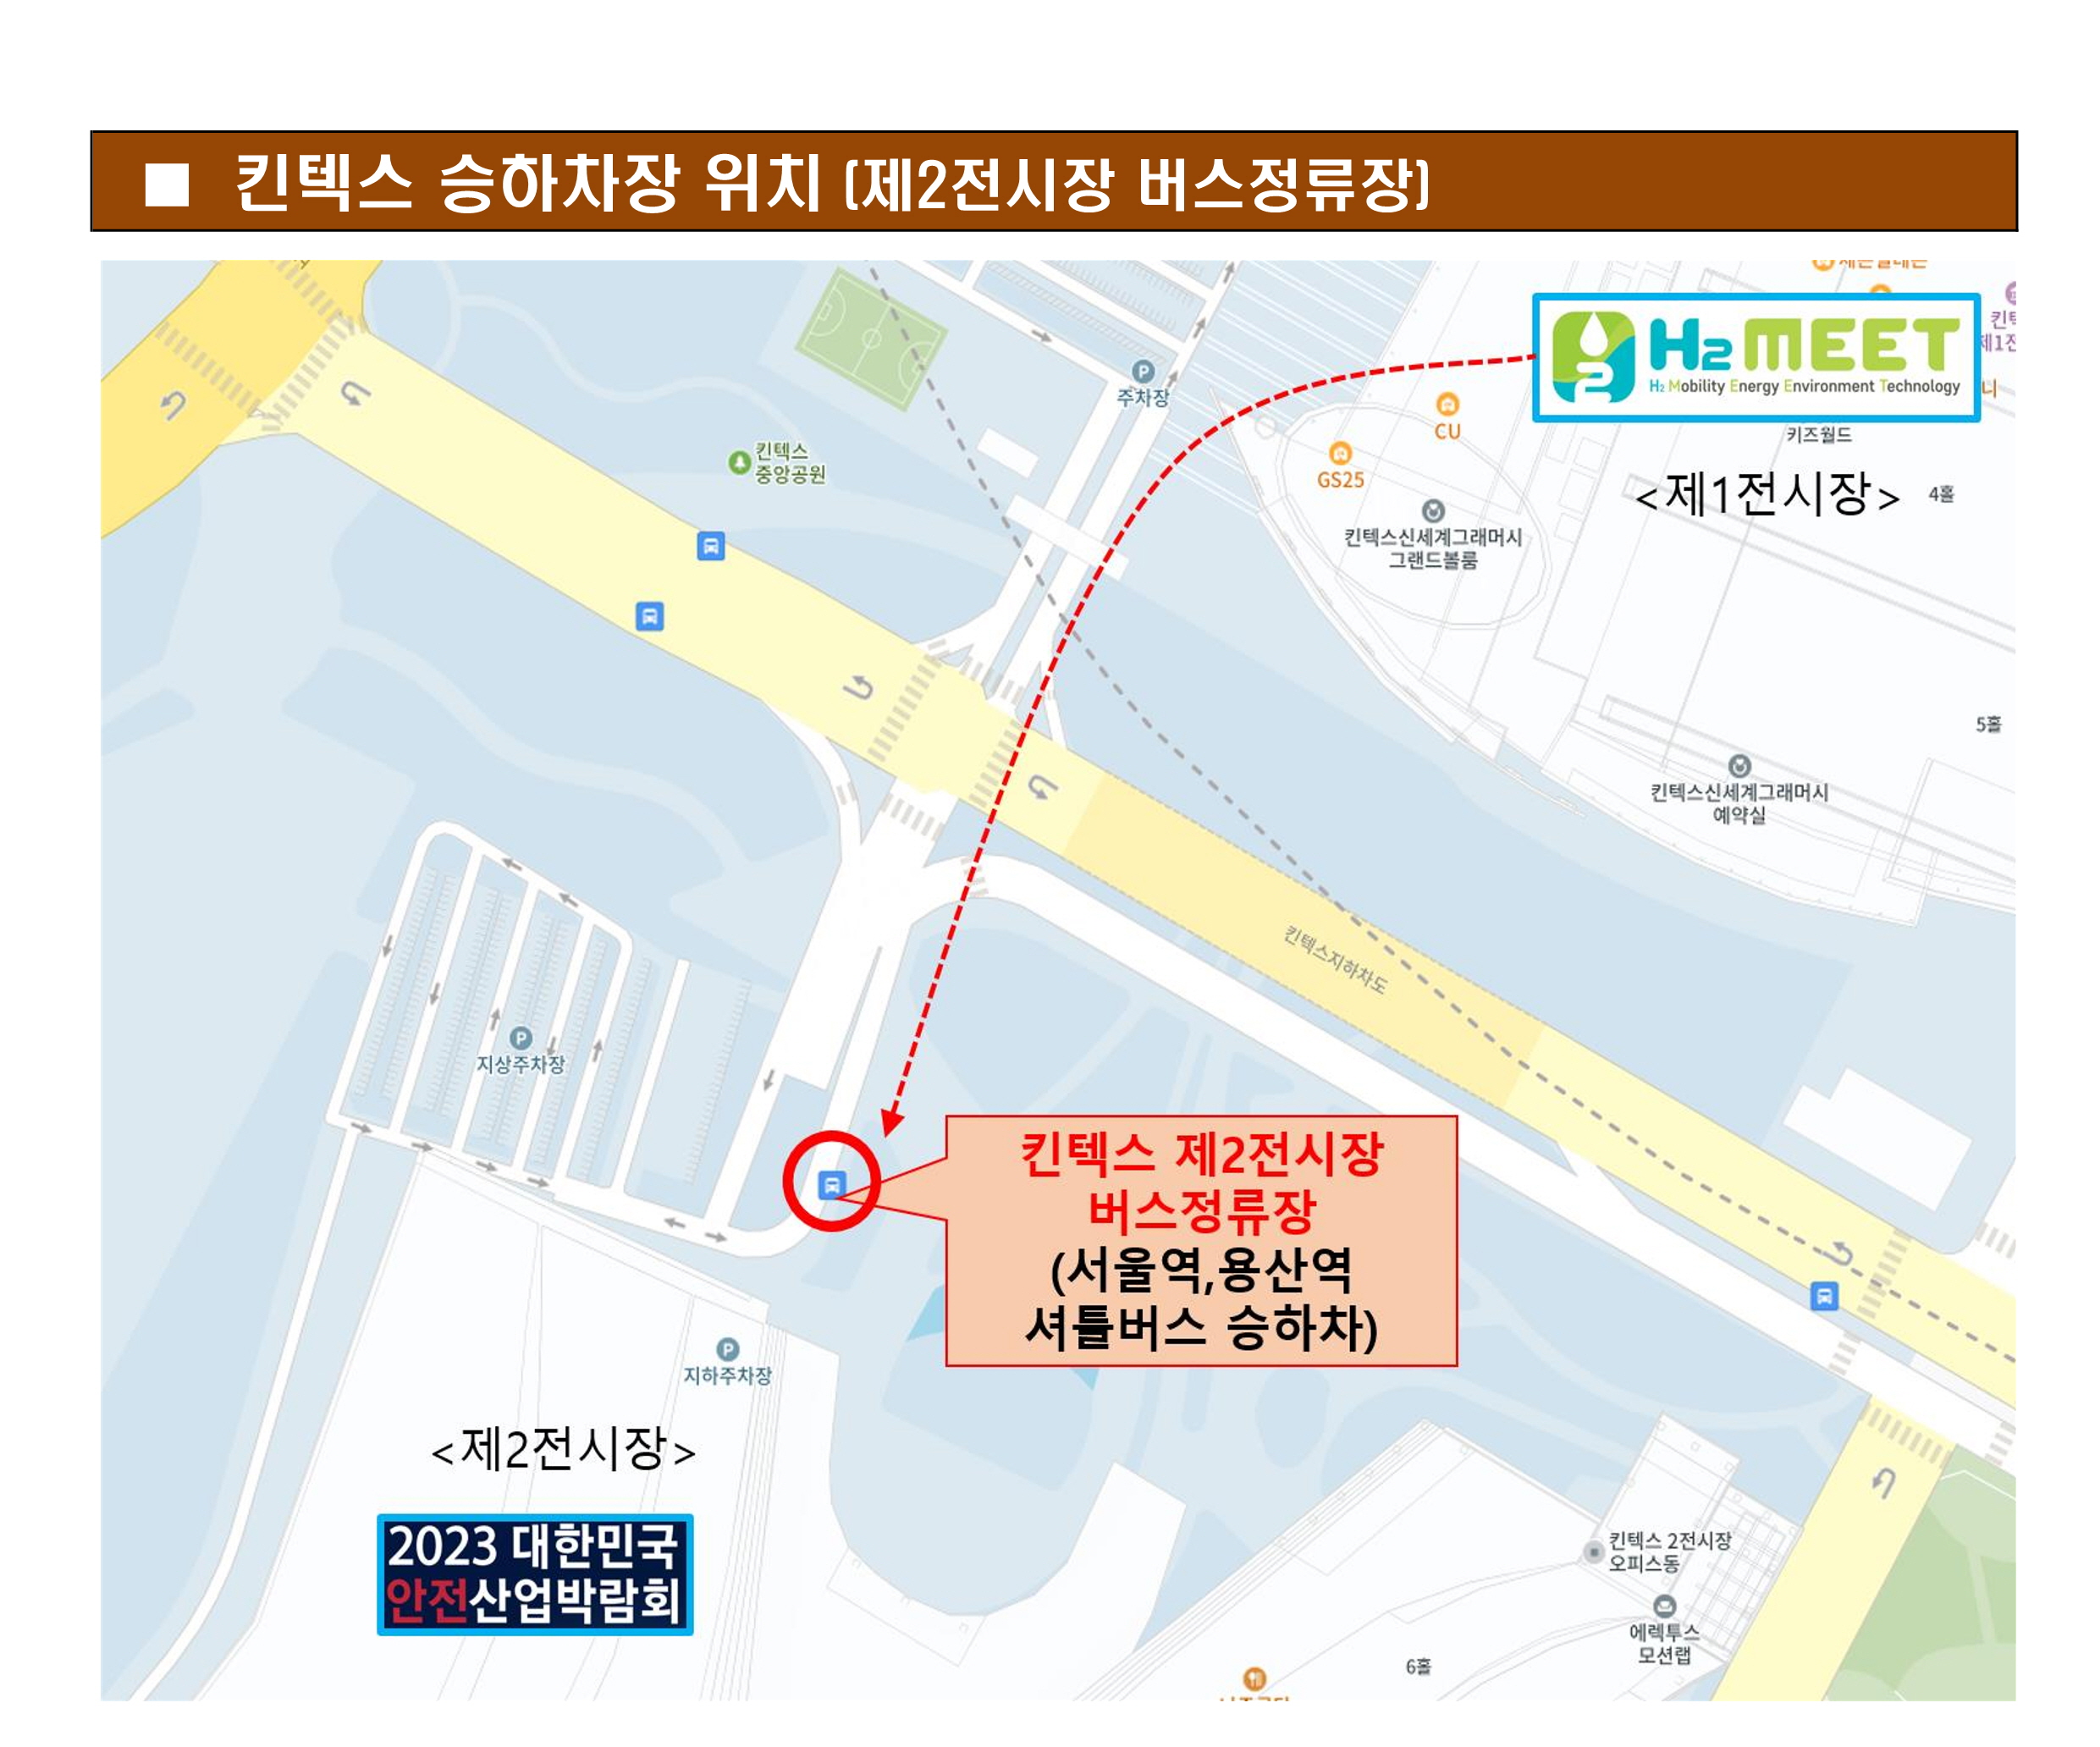 서울역,용산역-킨텍스 셔틀 승차장소 및 시간표(H2 MEET_안전산업박람회 제휴)_3.jpg